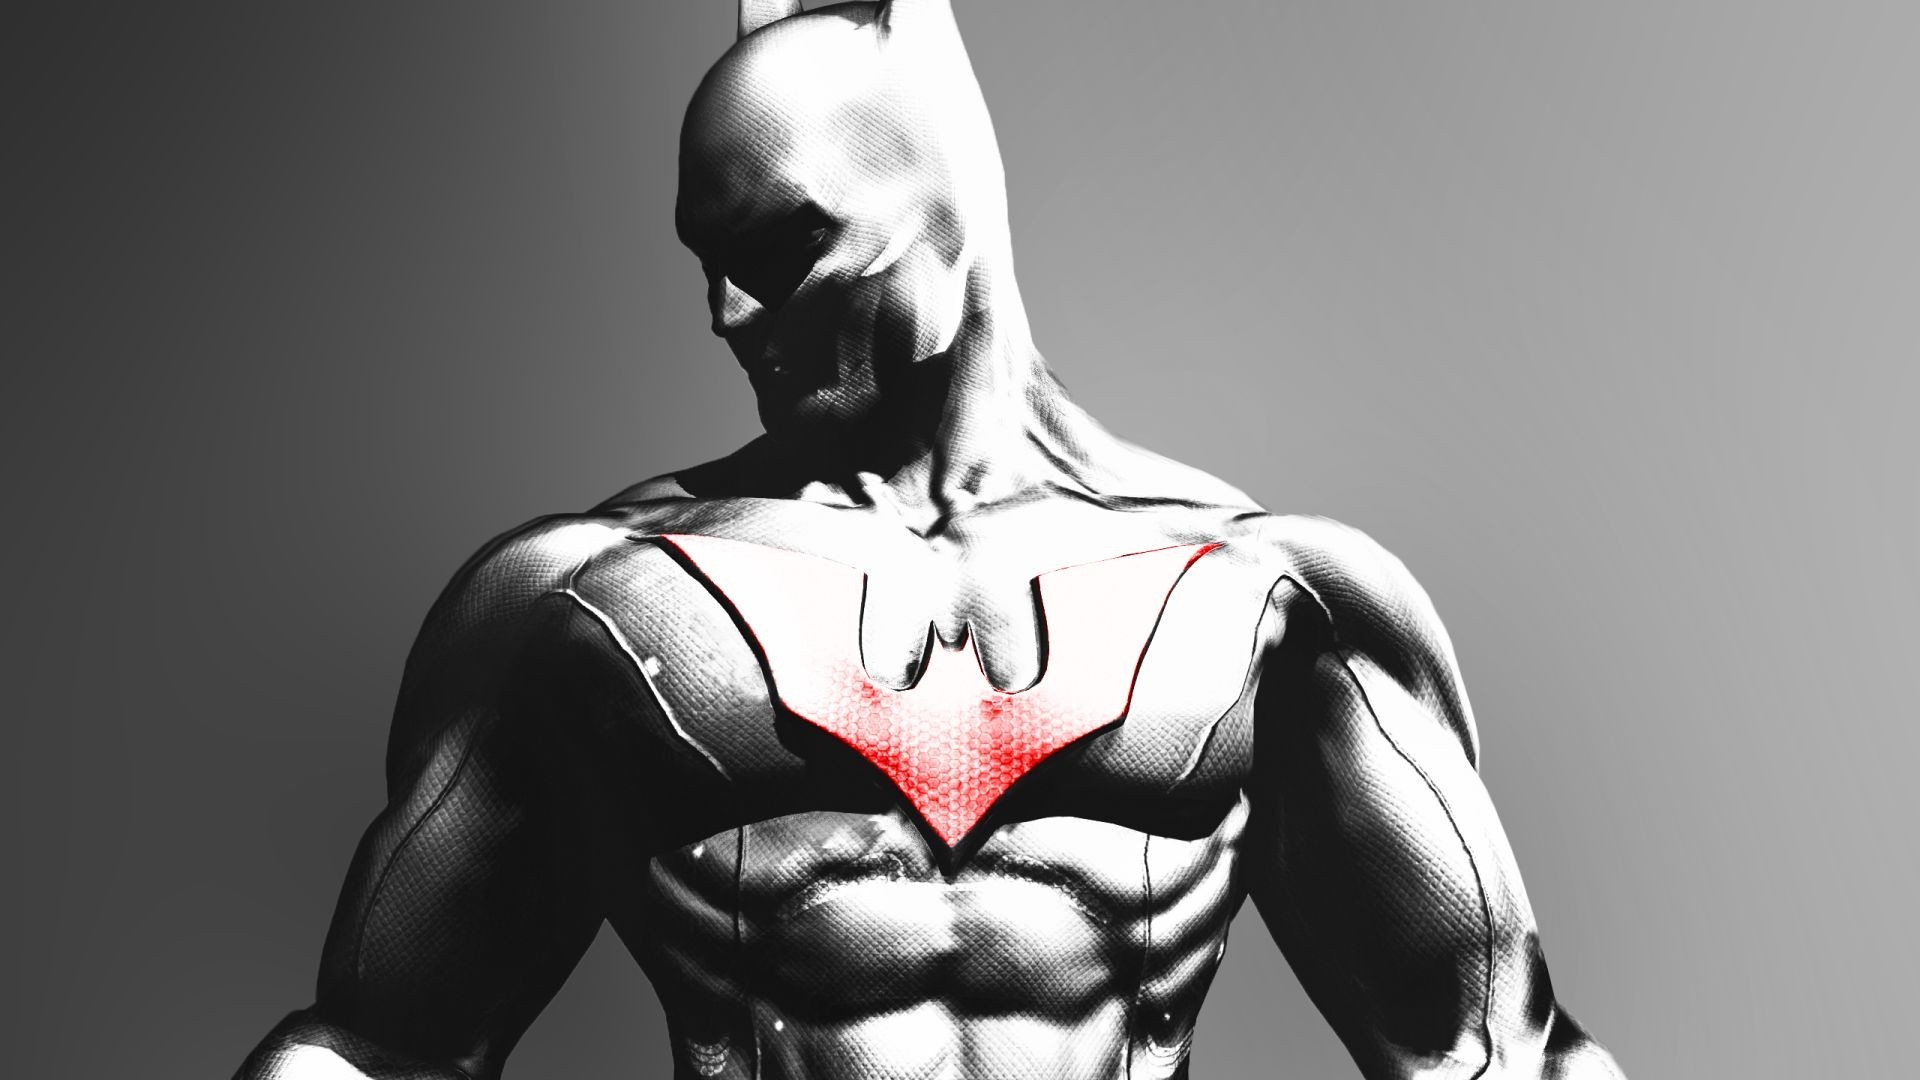 Batman: Arkham Origins Wallpaper